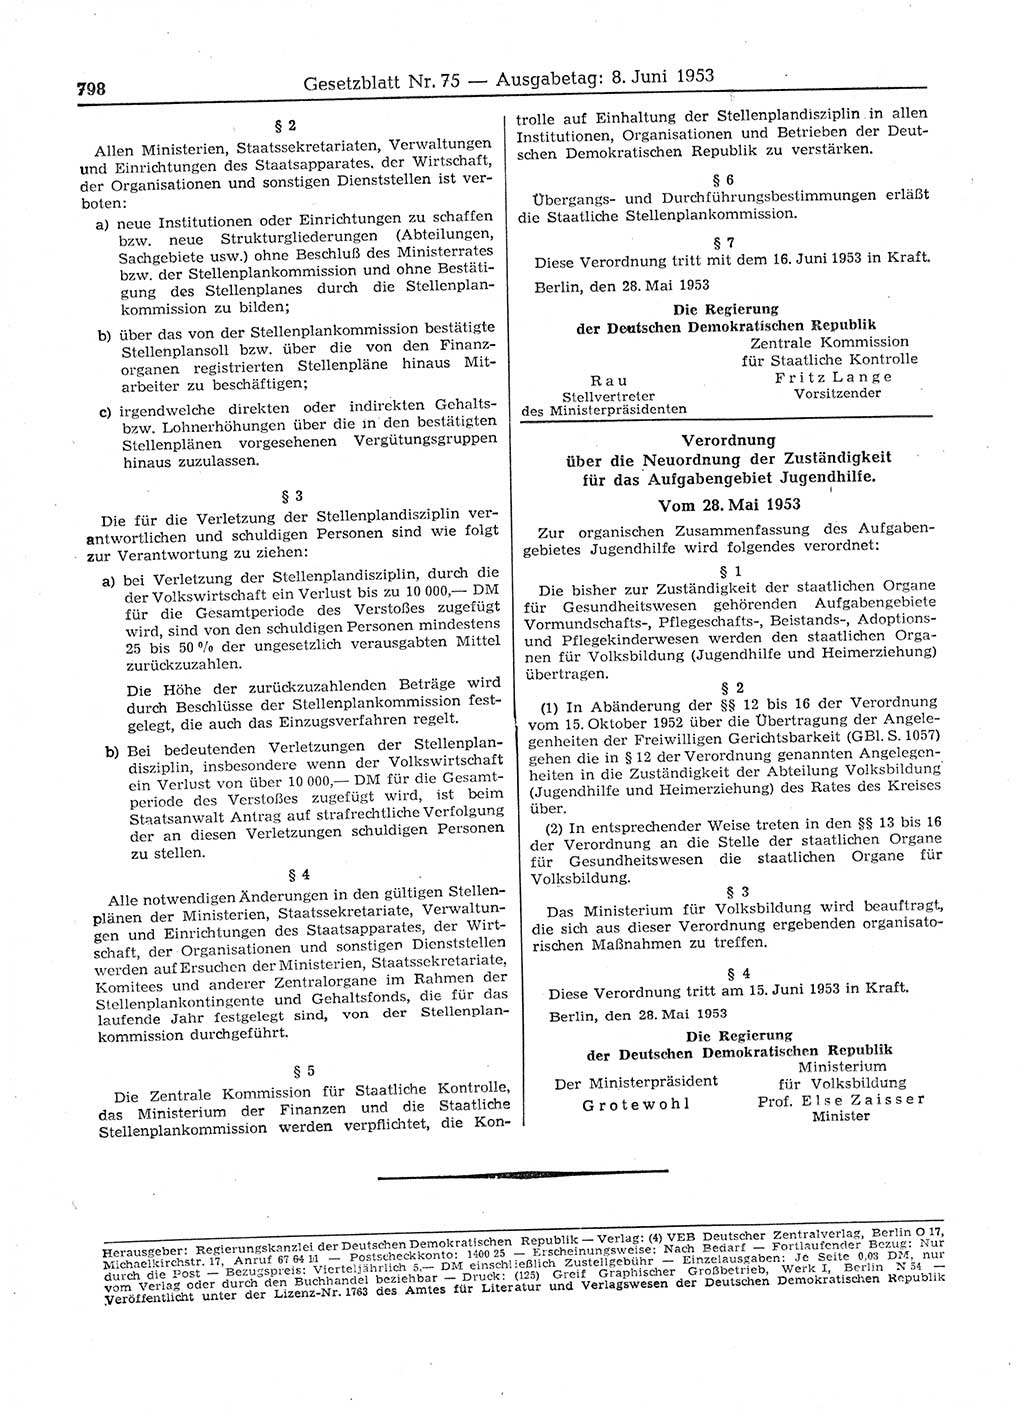 Gesetzblatt (GBl.) der Deutschen Demokratischen Republik (DDR) 1953, Seite 798 (GBl. DDR 1953, S. 798)